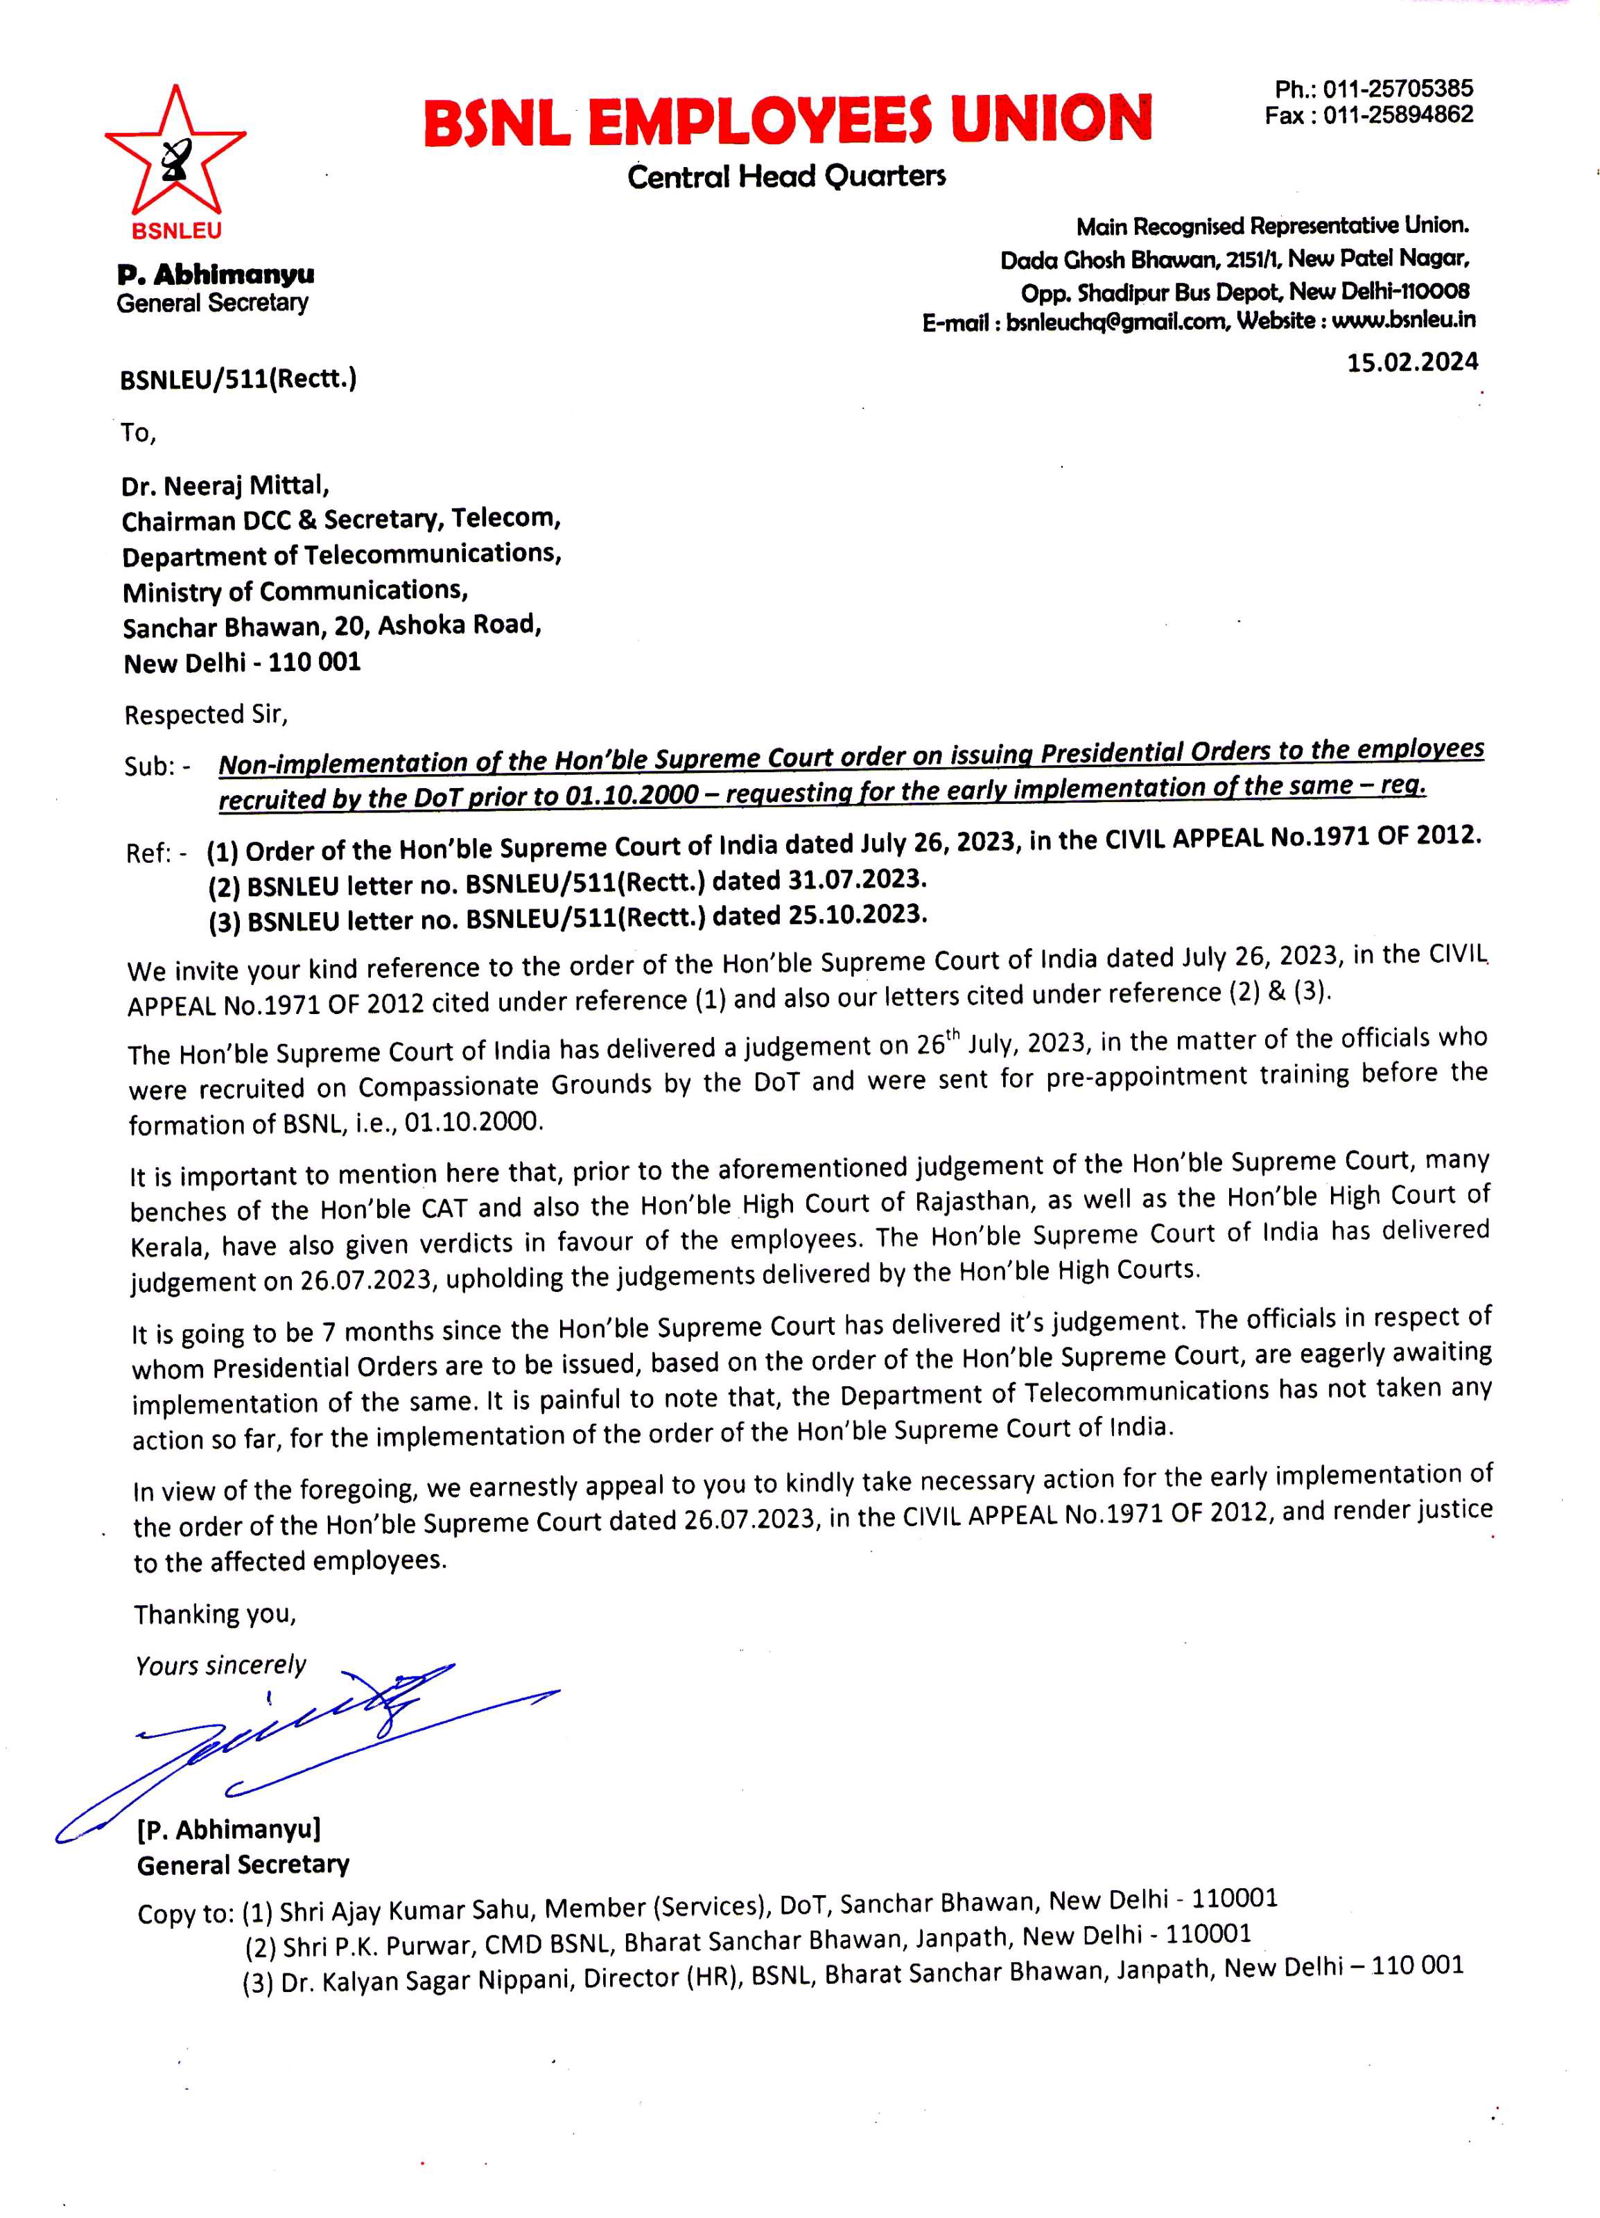 *DoT द्वारे नियुक्त केलेल्या आणि BSNL च्या स्थापनेपूर्वी प्रशिक्षणासाठी पाठवलेल्या कर्मचाऱ्यांना अध्यक्षीय आदेश जारी करणे - BSNLEU ने सचिव, DoT यांना पत्र लिहून माननीय सर्वोच्च न्यायालयाच्या आदेशाची अंमलबजावणी करण्याची मागणी केली.*  Image 